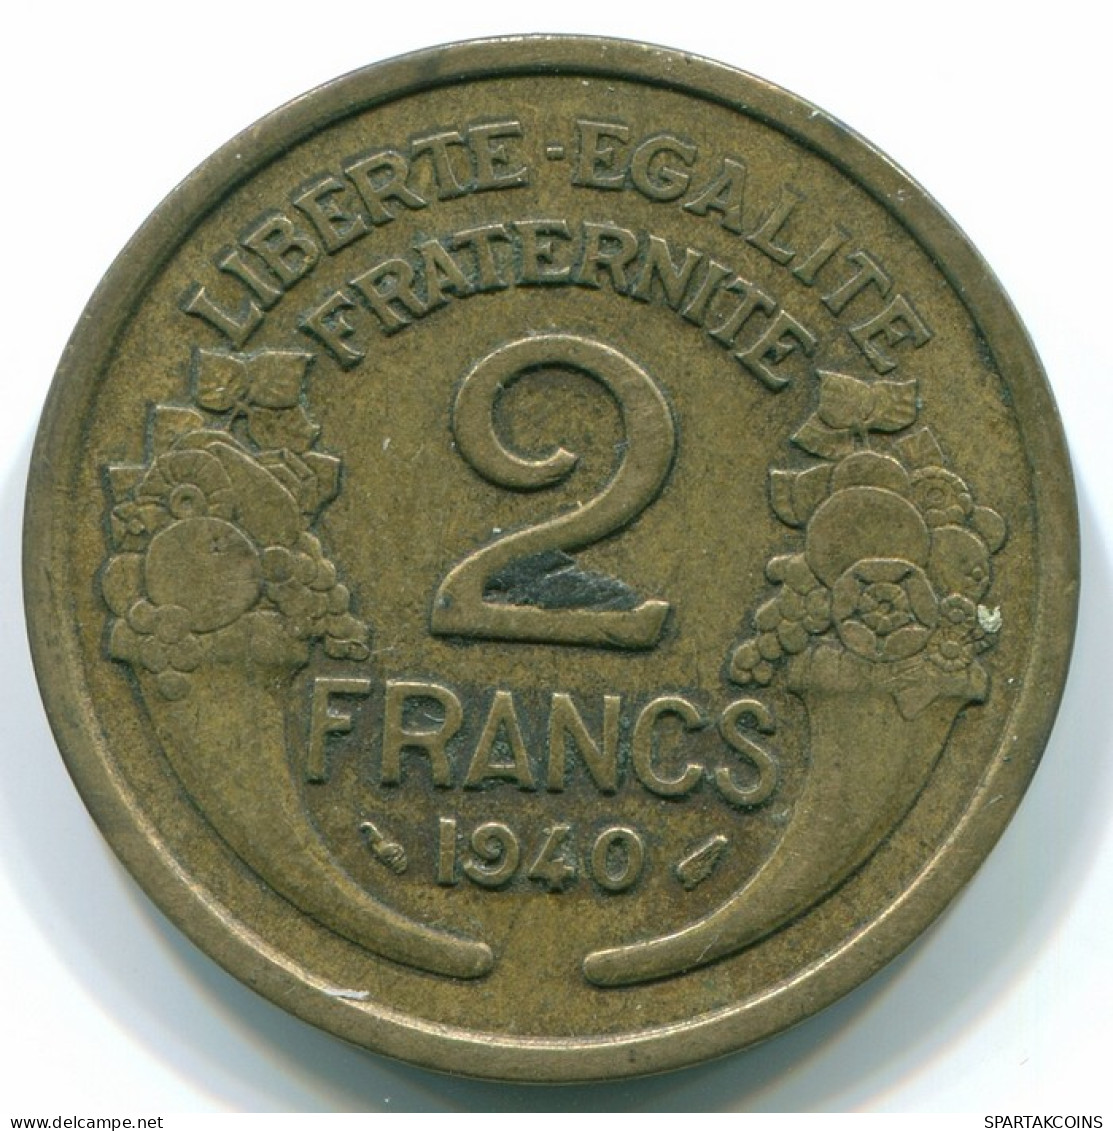 2 FRANCS 1940 FRANCE Coin VF/XF #FR1083.8 - 2 Francs